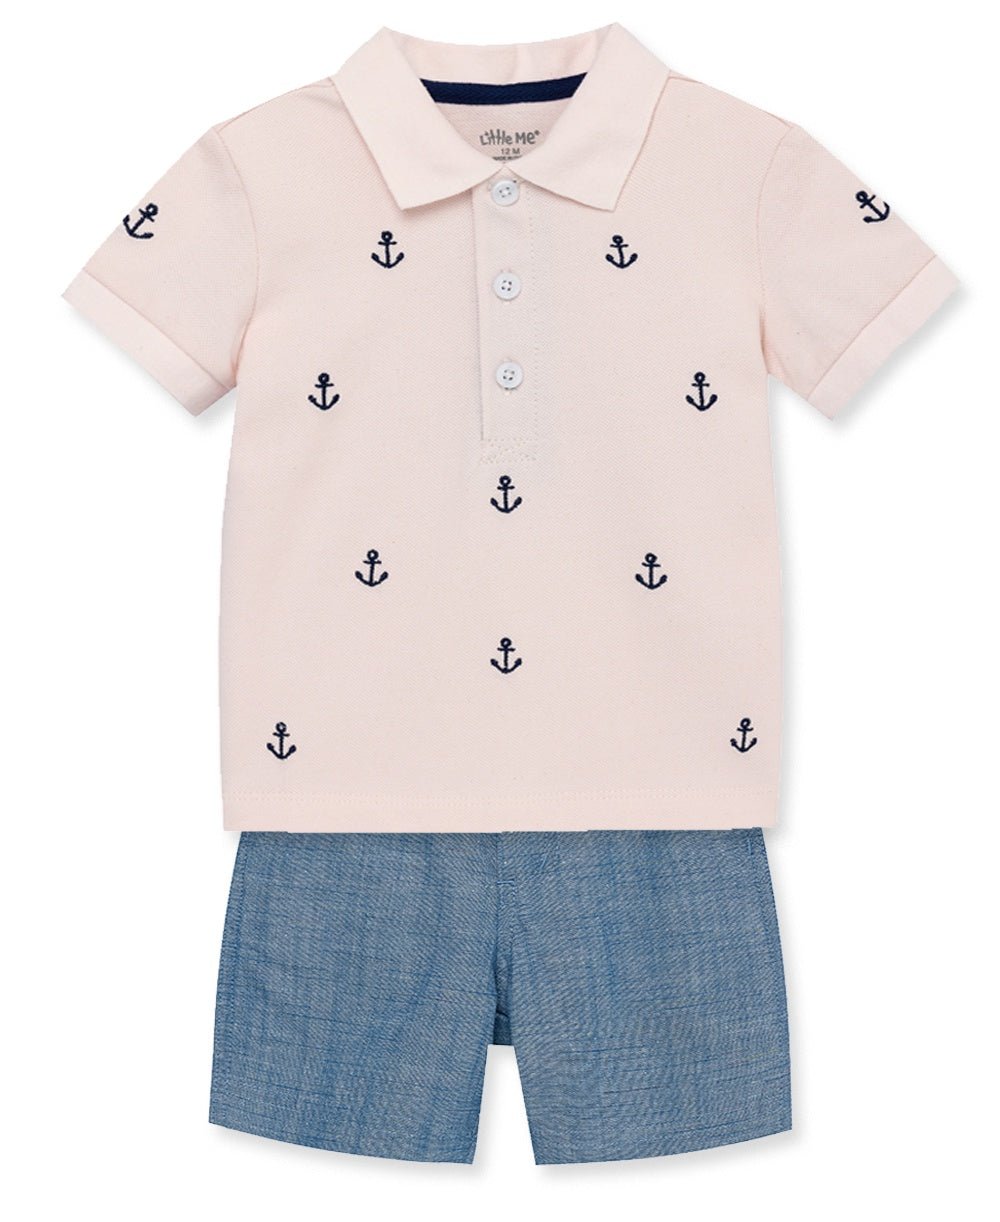 Anchor Polo Short Set - Lush Lemon - Children's Clothing - Little Me - 745644907871